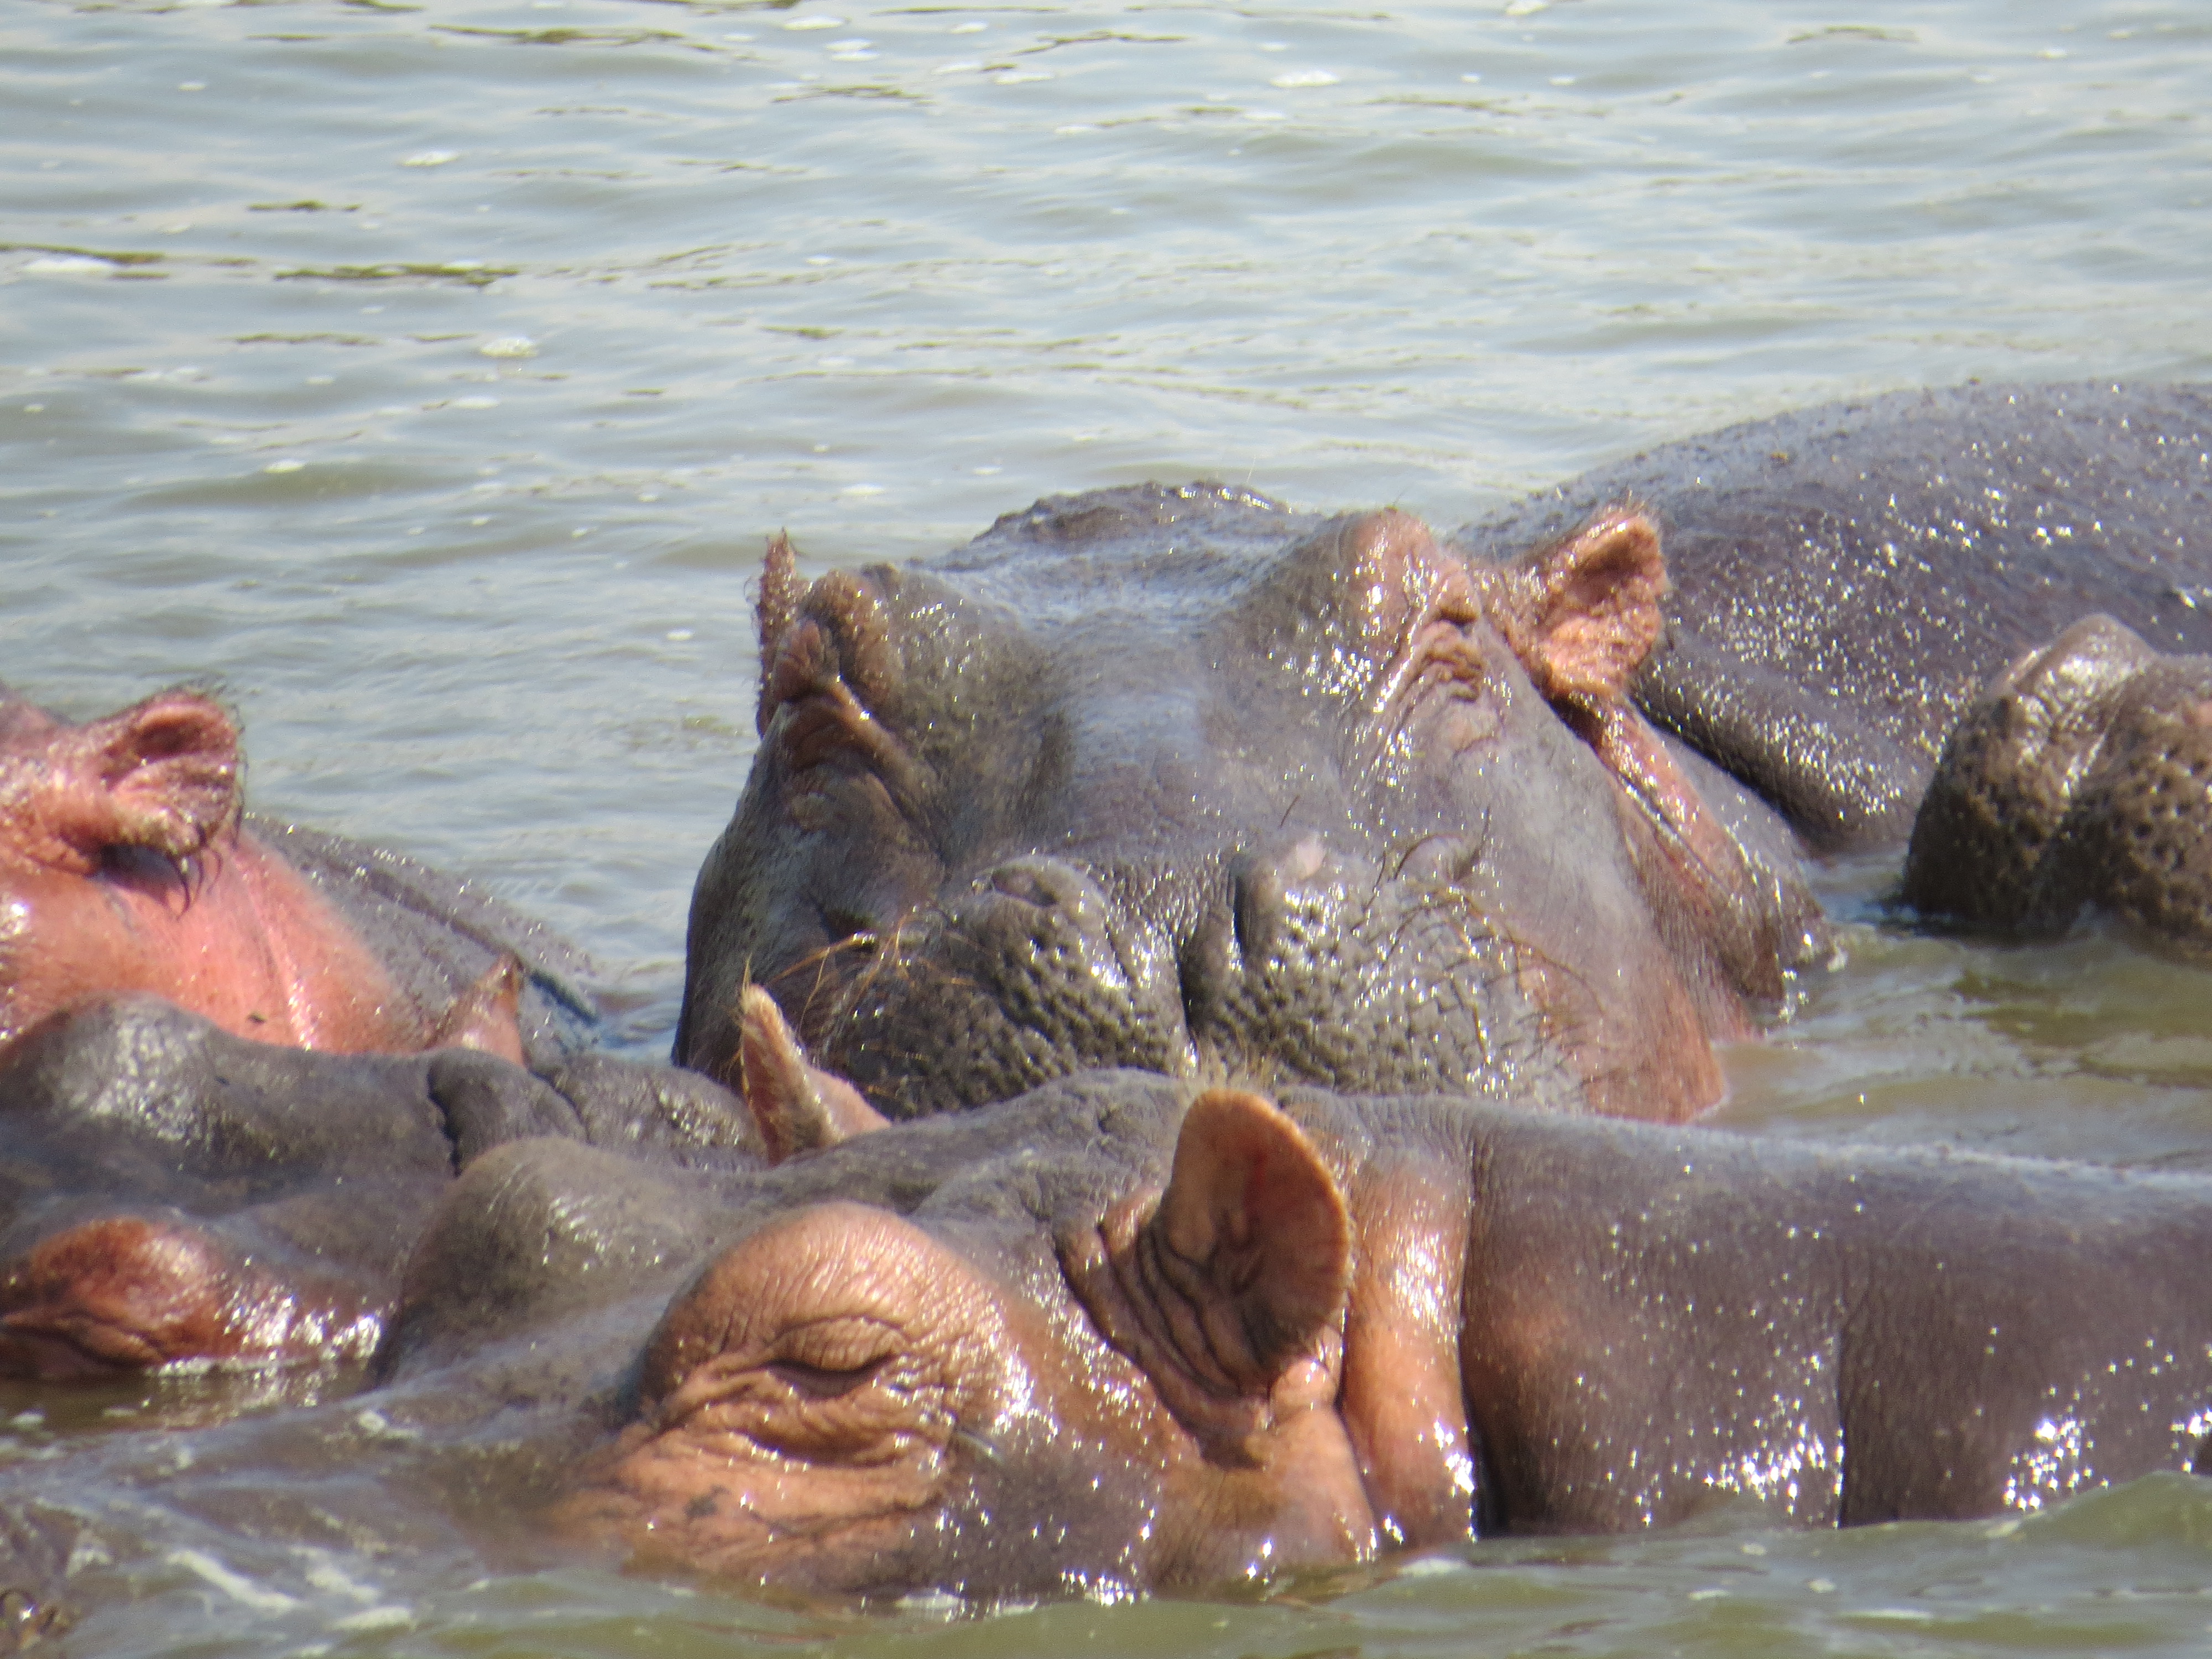 Hippos on the Kazinga channel boat safari - 11 Days Uganda gorilla and wildlife safari